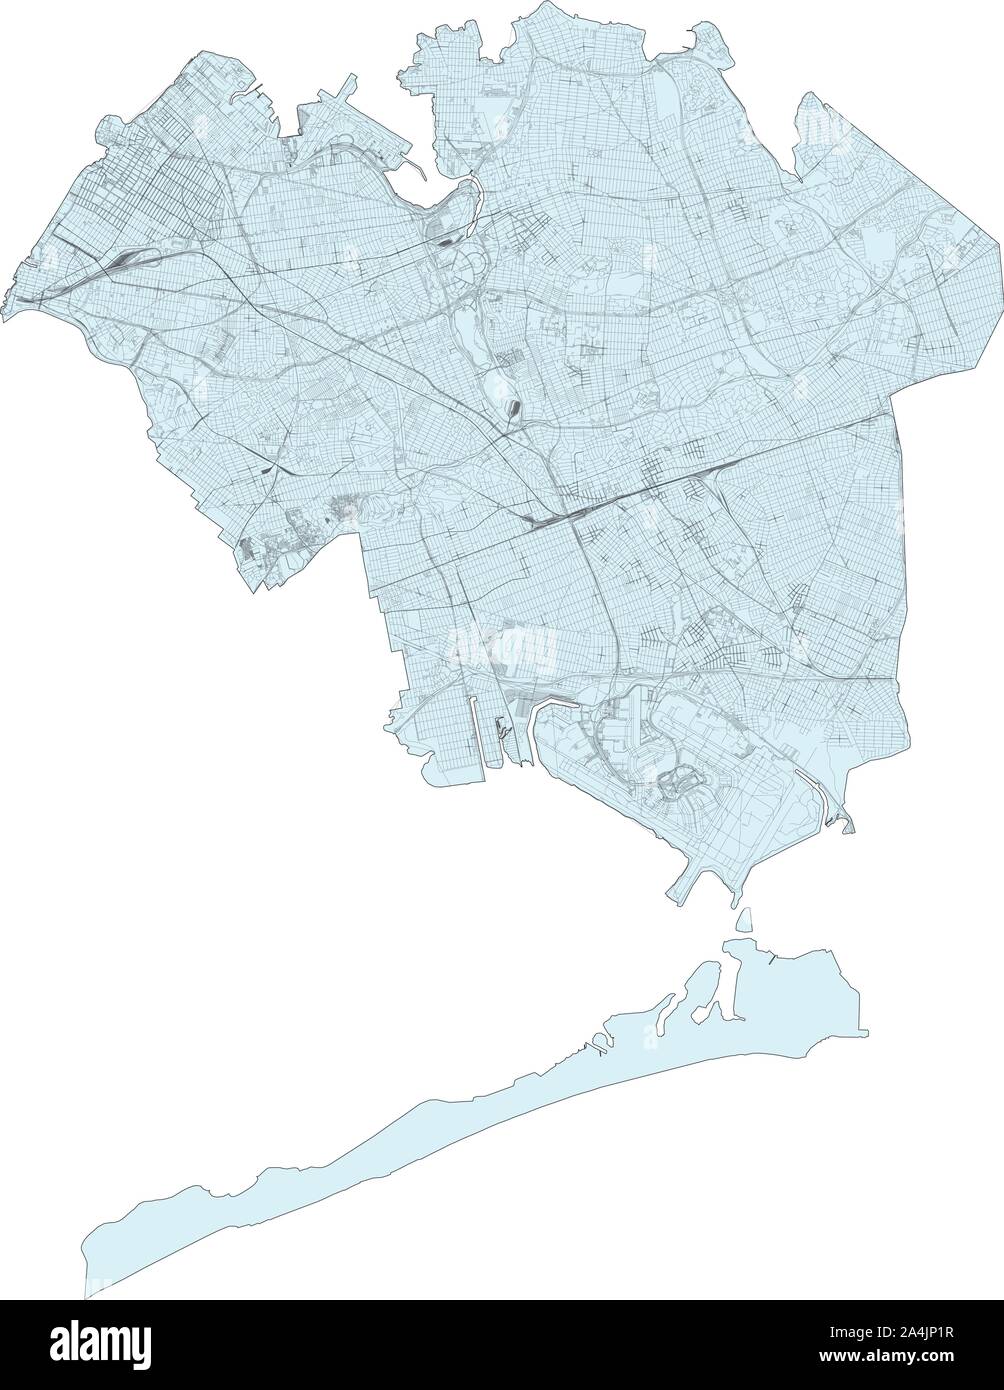 Carte Satellite de la ville de New York, Queens, États-Unis. La carte des routes, des rocades et autoroutes, rivières, lignes de chemin de fer. Carte de transport Illustration de Vecteur